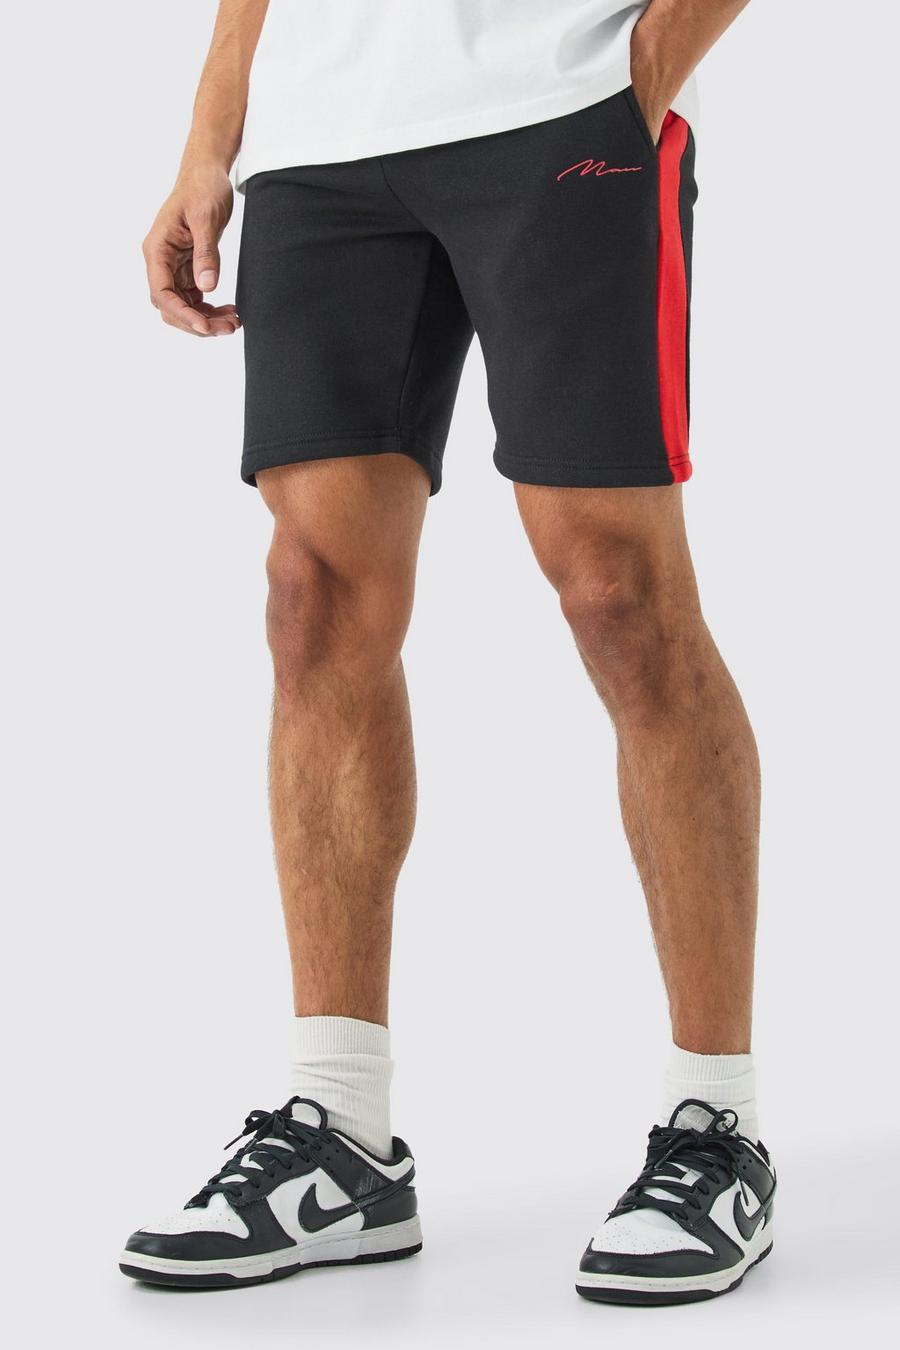 Pantalón corto MAN Signature ajustado de largo medio con colores en bloque, Black